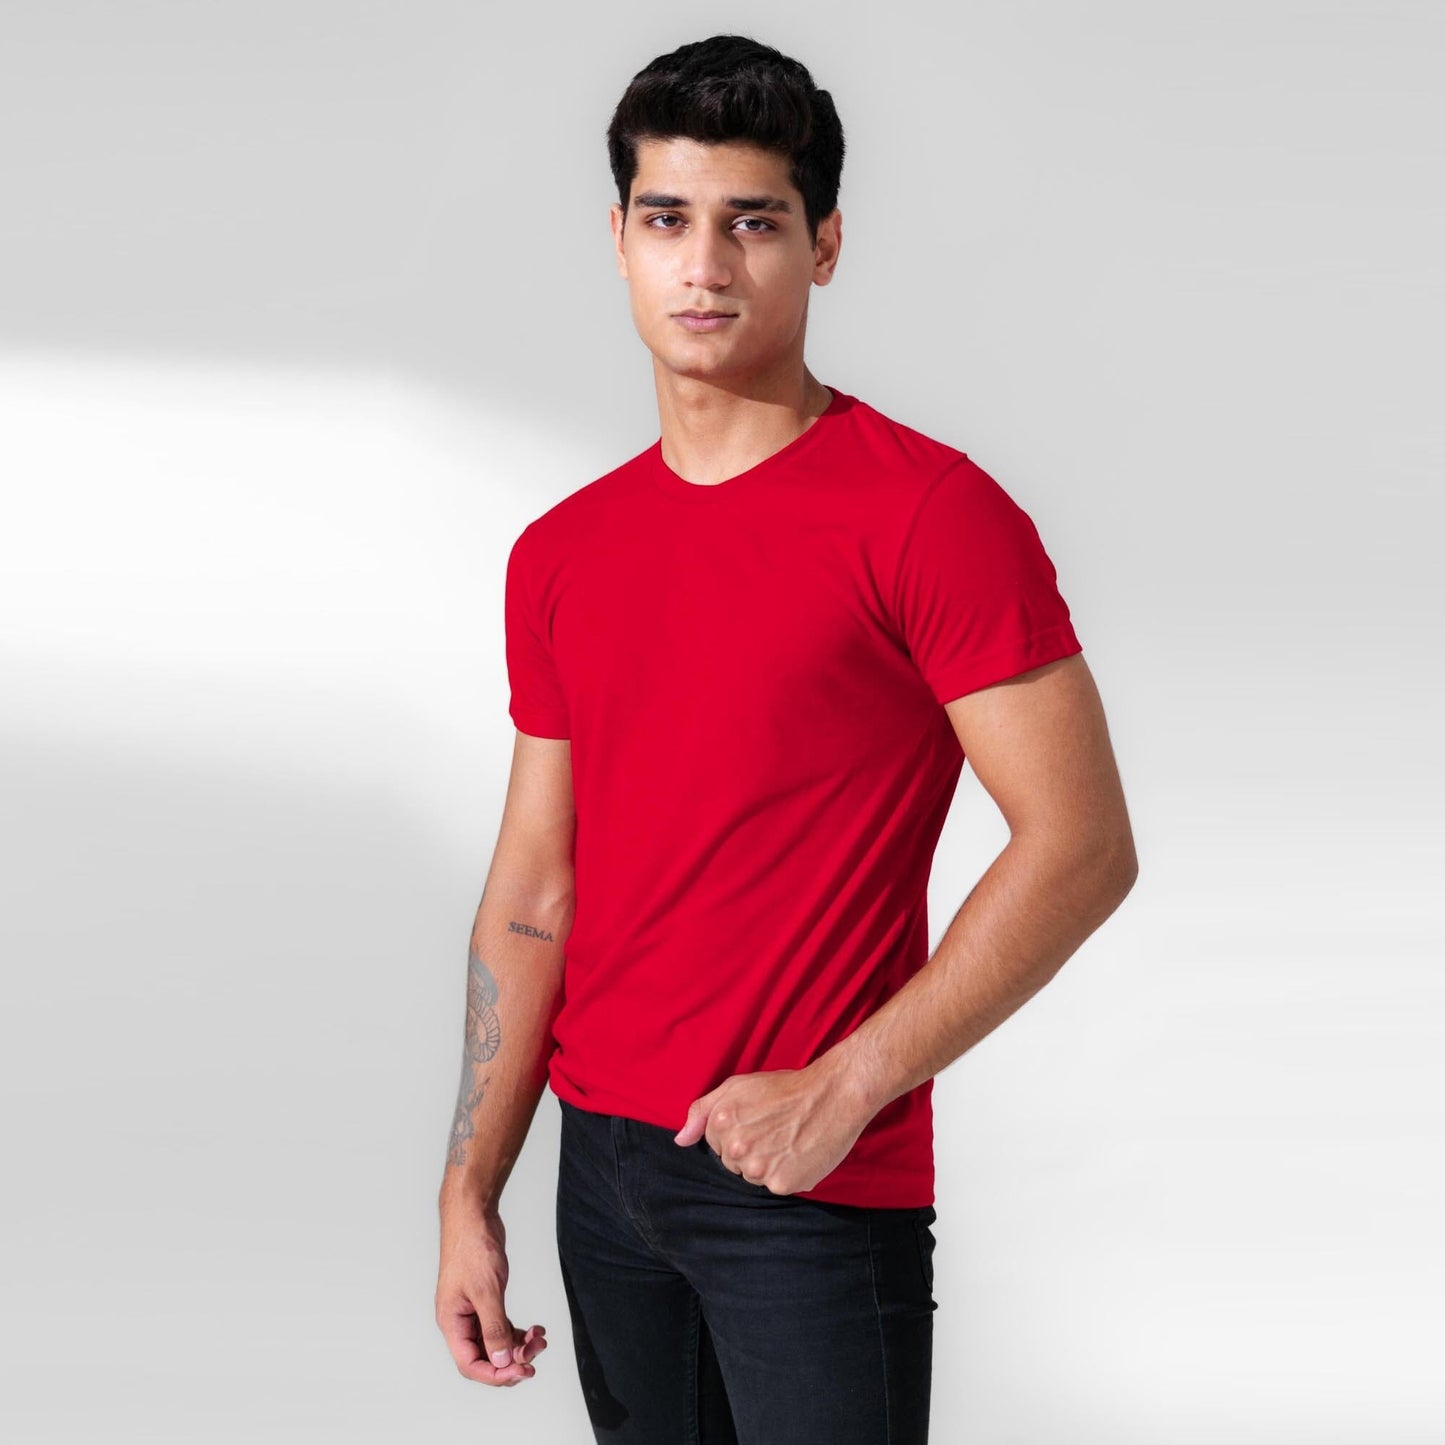 Polo Republica Men's Essentials Premium Tee Shirt Men's Tee Shirt Polo Republica Red S 